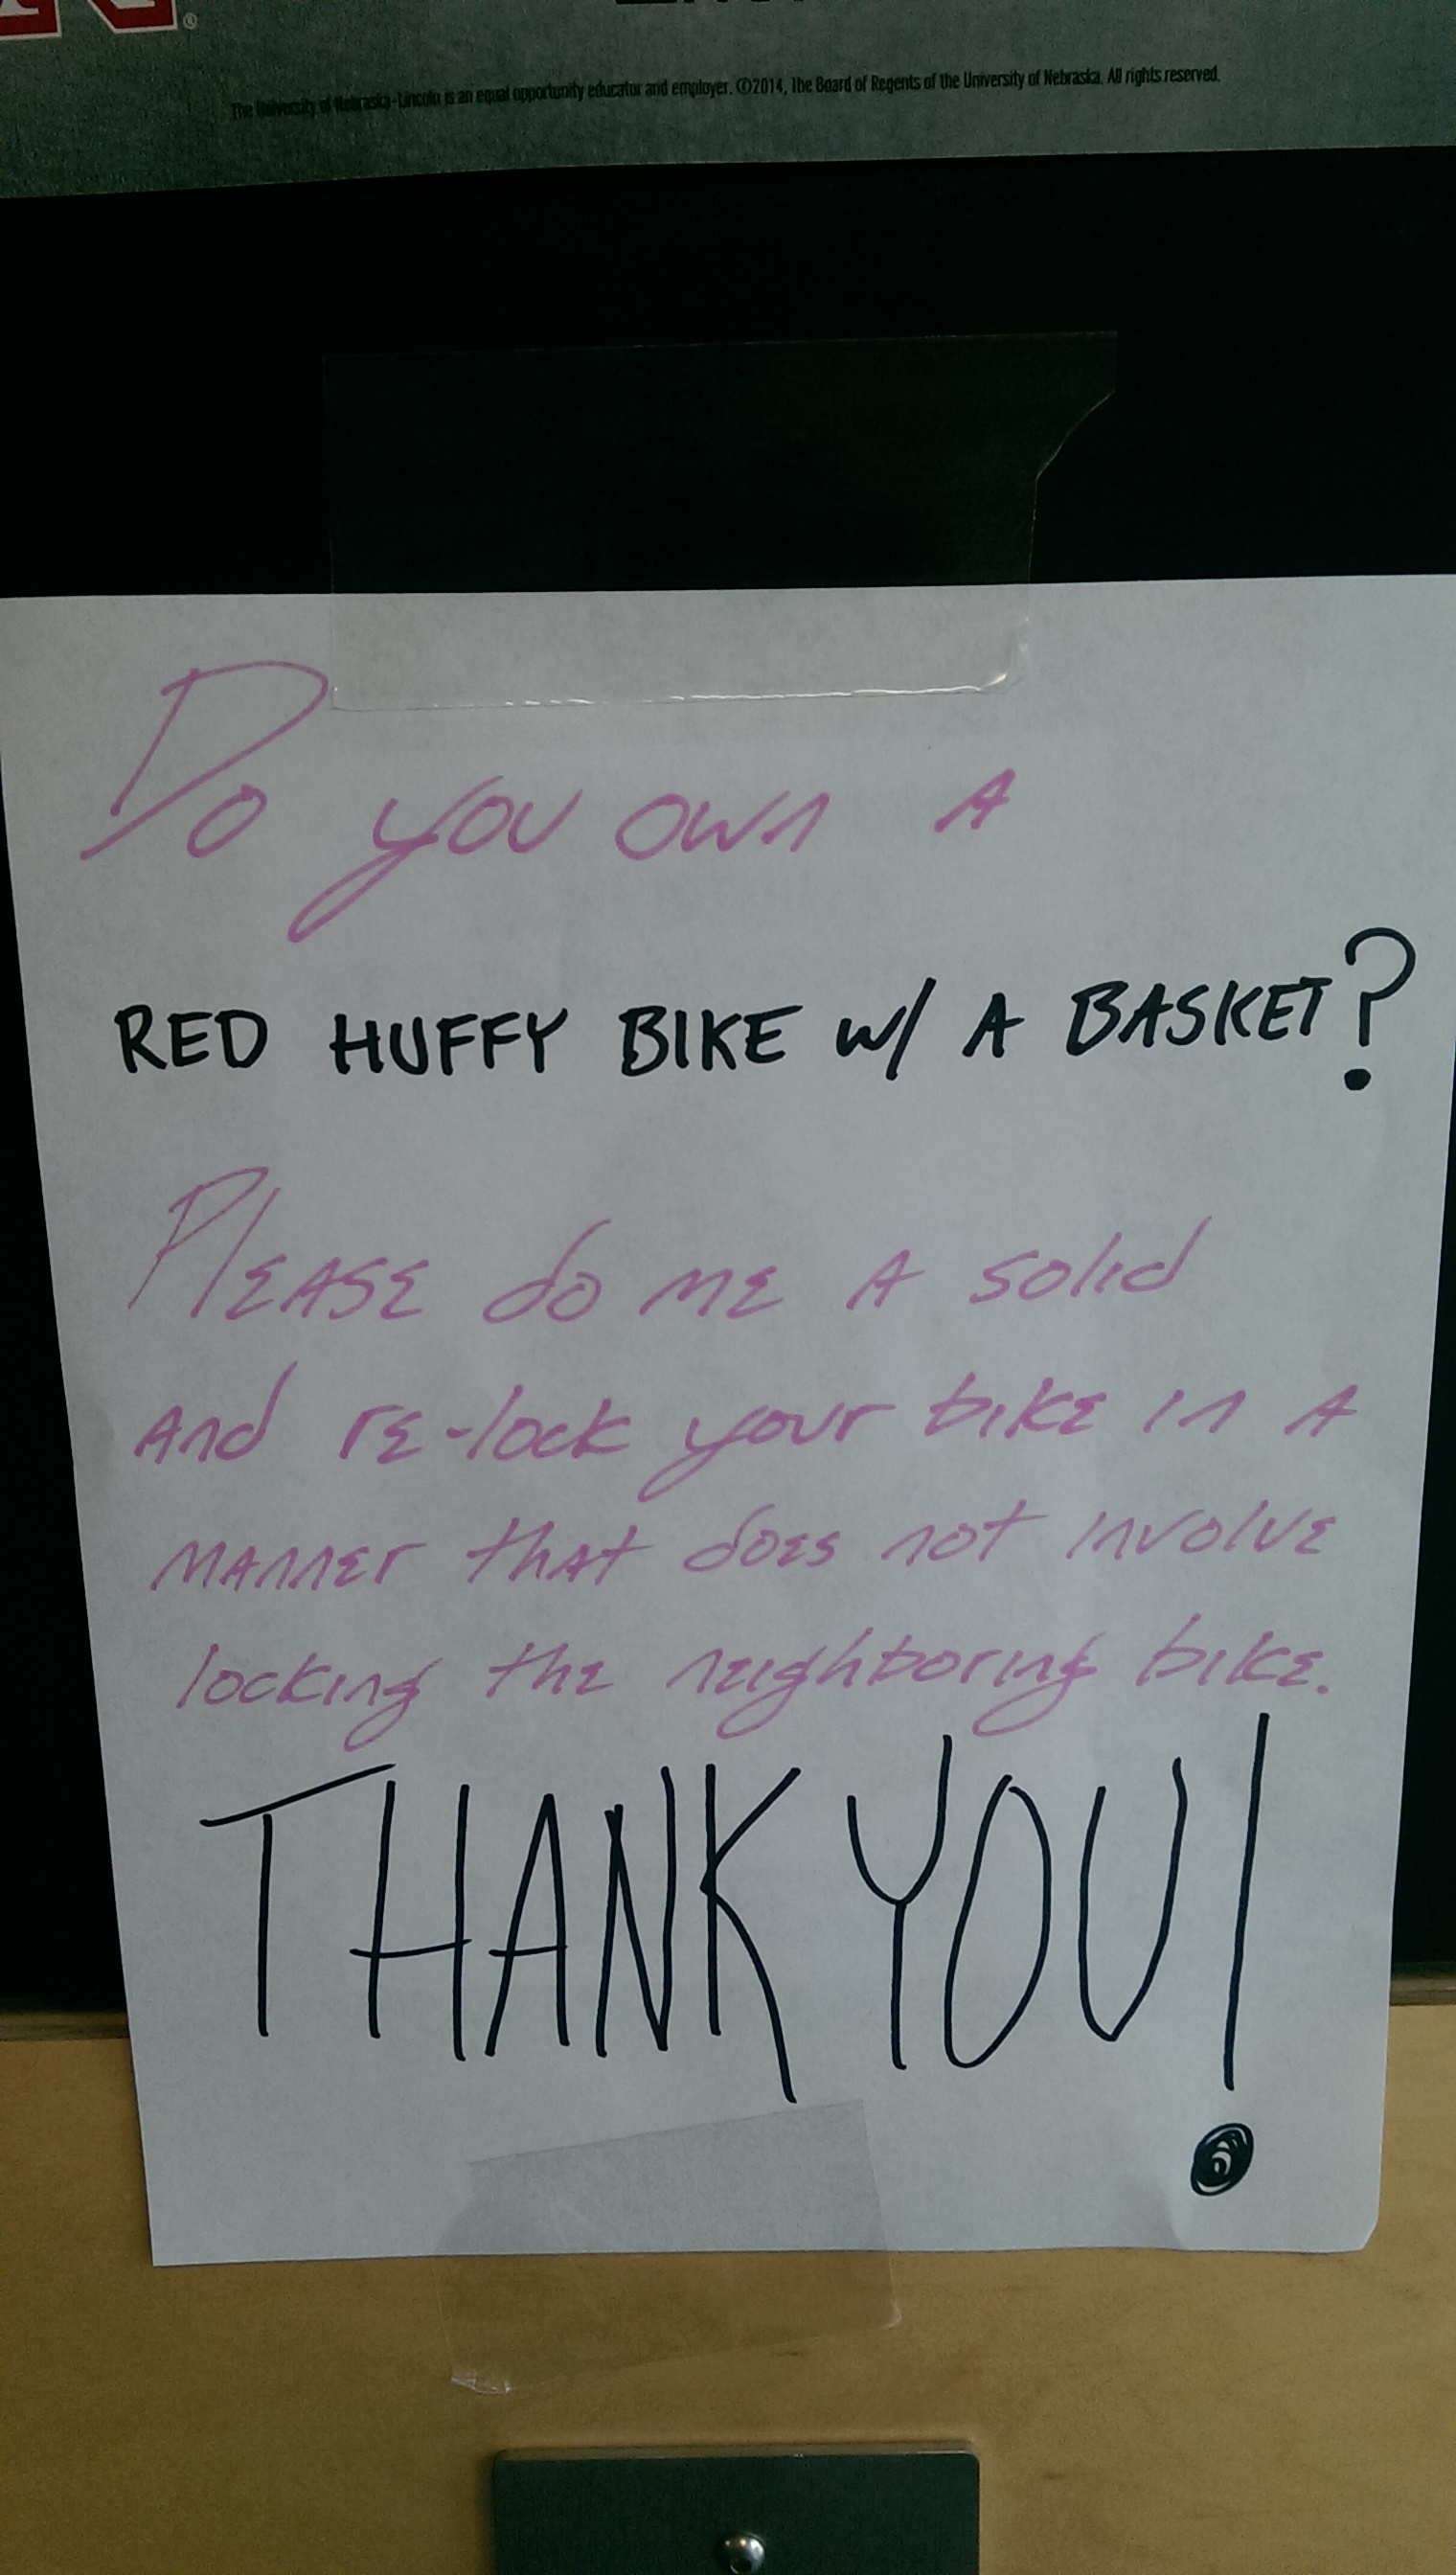 Found around the bike rack on UNL campus